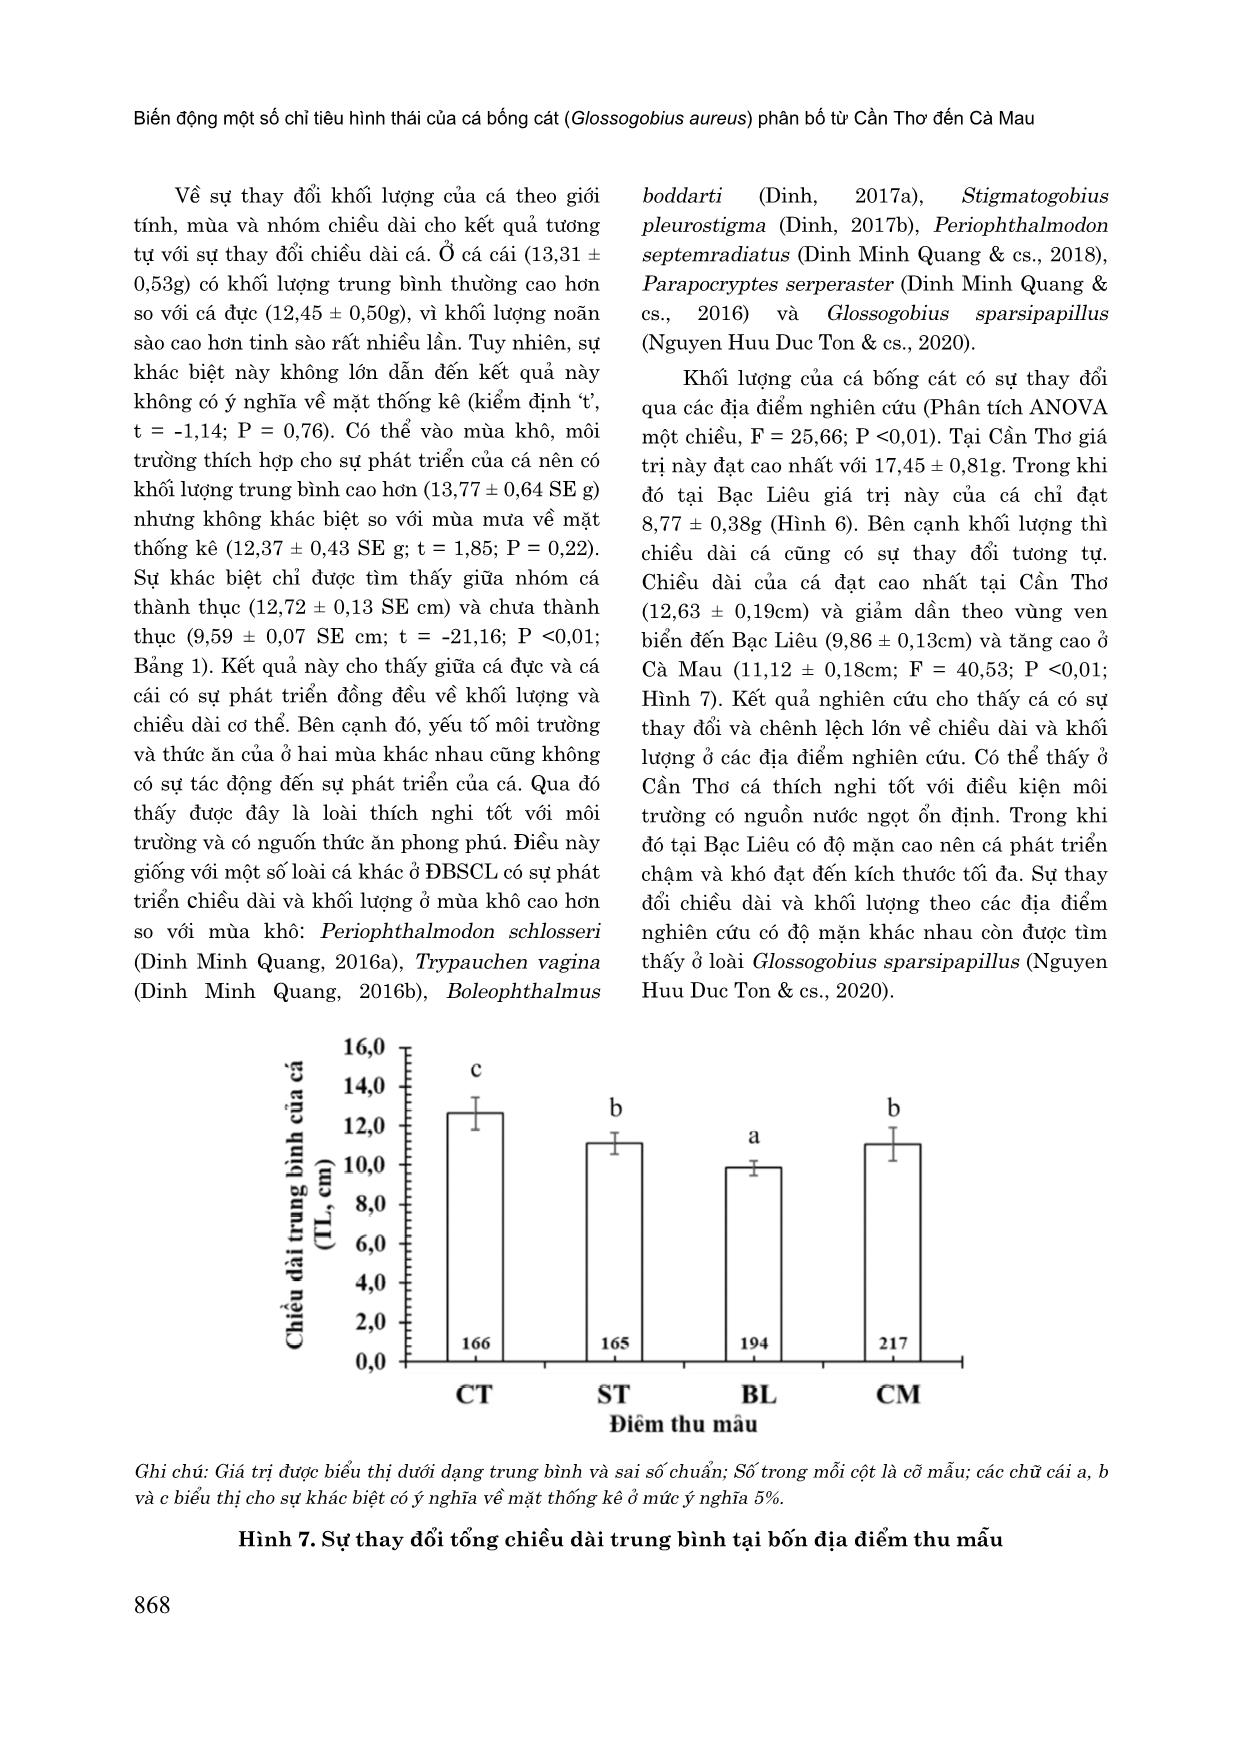 Biến động một số chỉ tiêu hình thái của cá bống cát (Glossogobius aureus) phân bố từ cần thơ đến Cà Mau trang 6